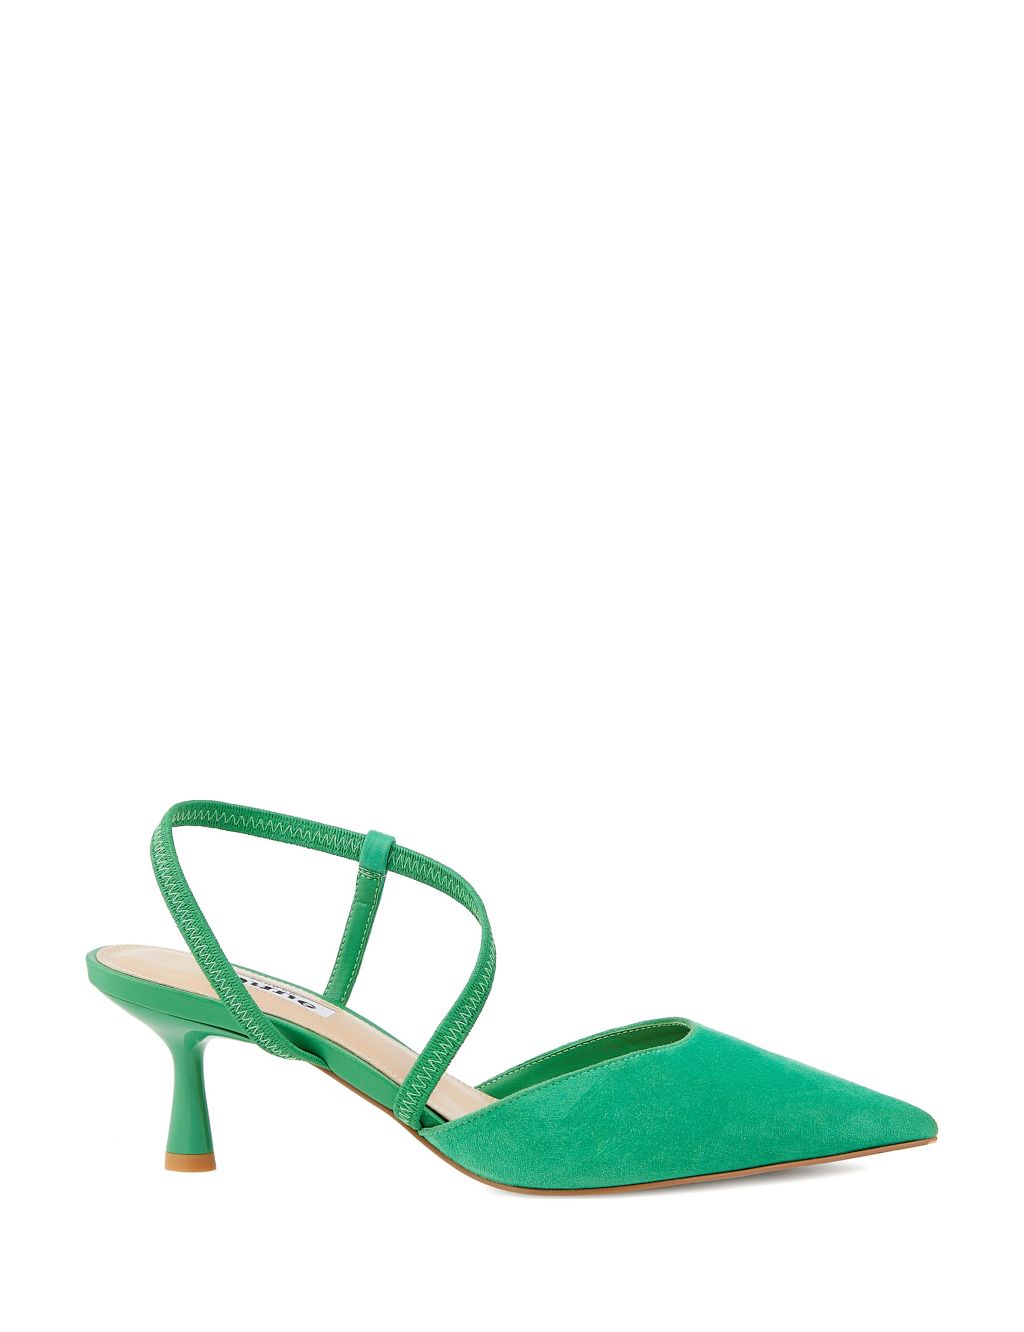 Women’s Green Sandals | M&S